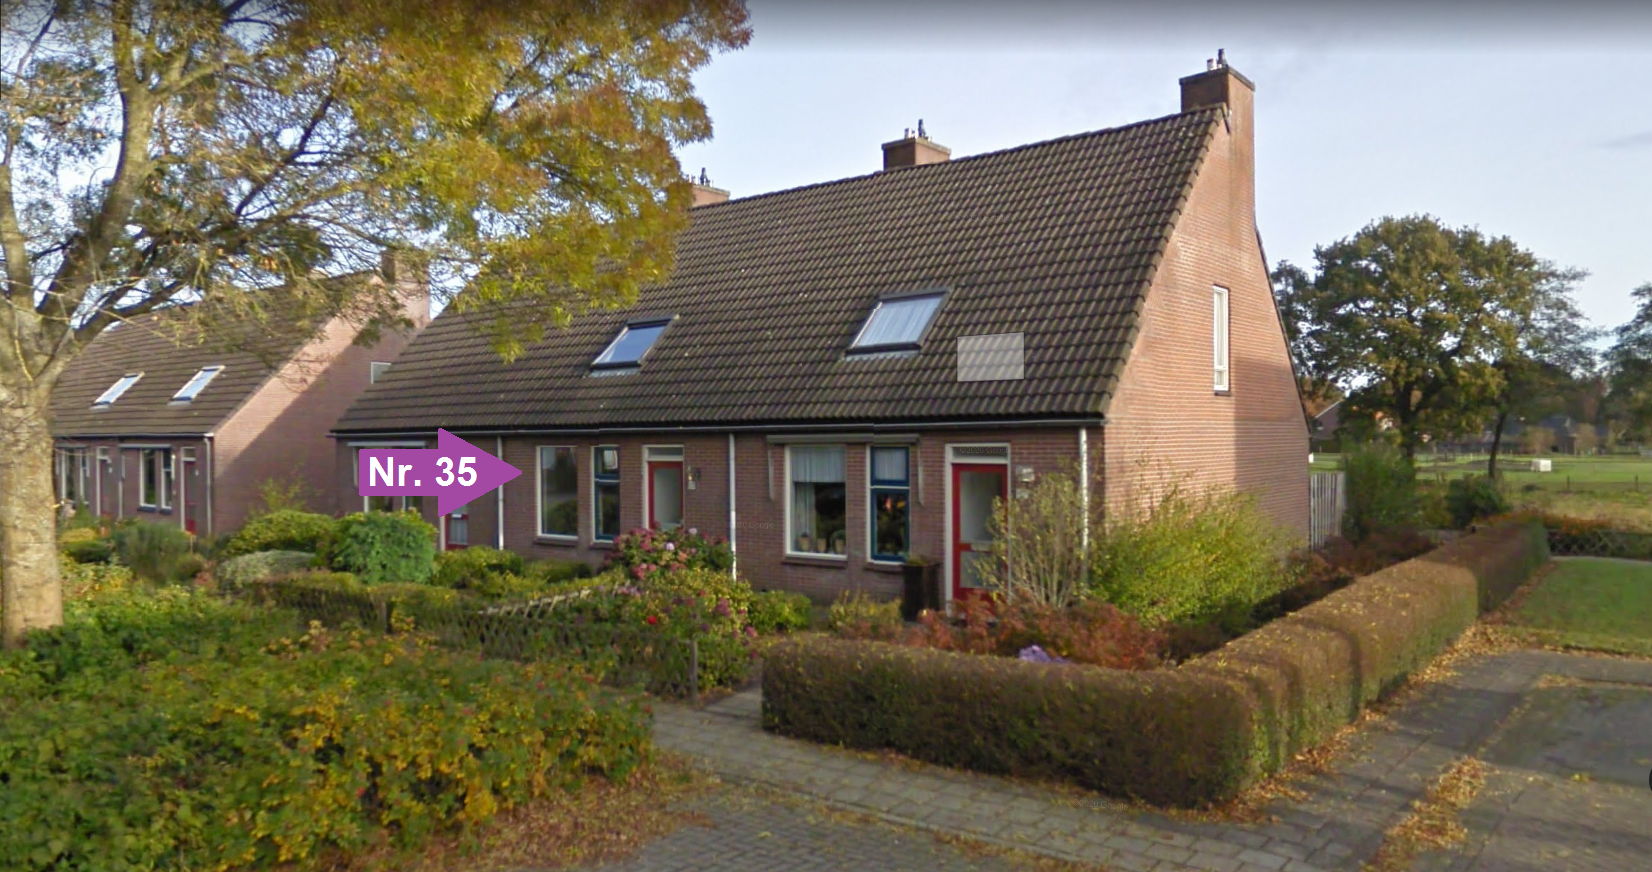 Veldhuizenstraat 35, 7741 PV Coevorden, Nederland